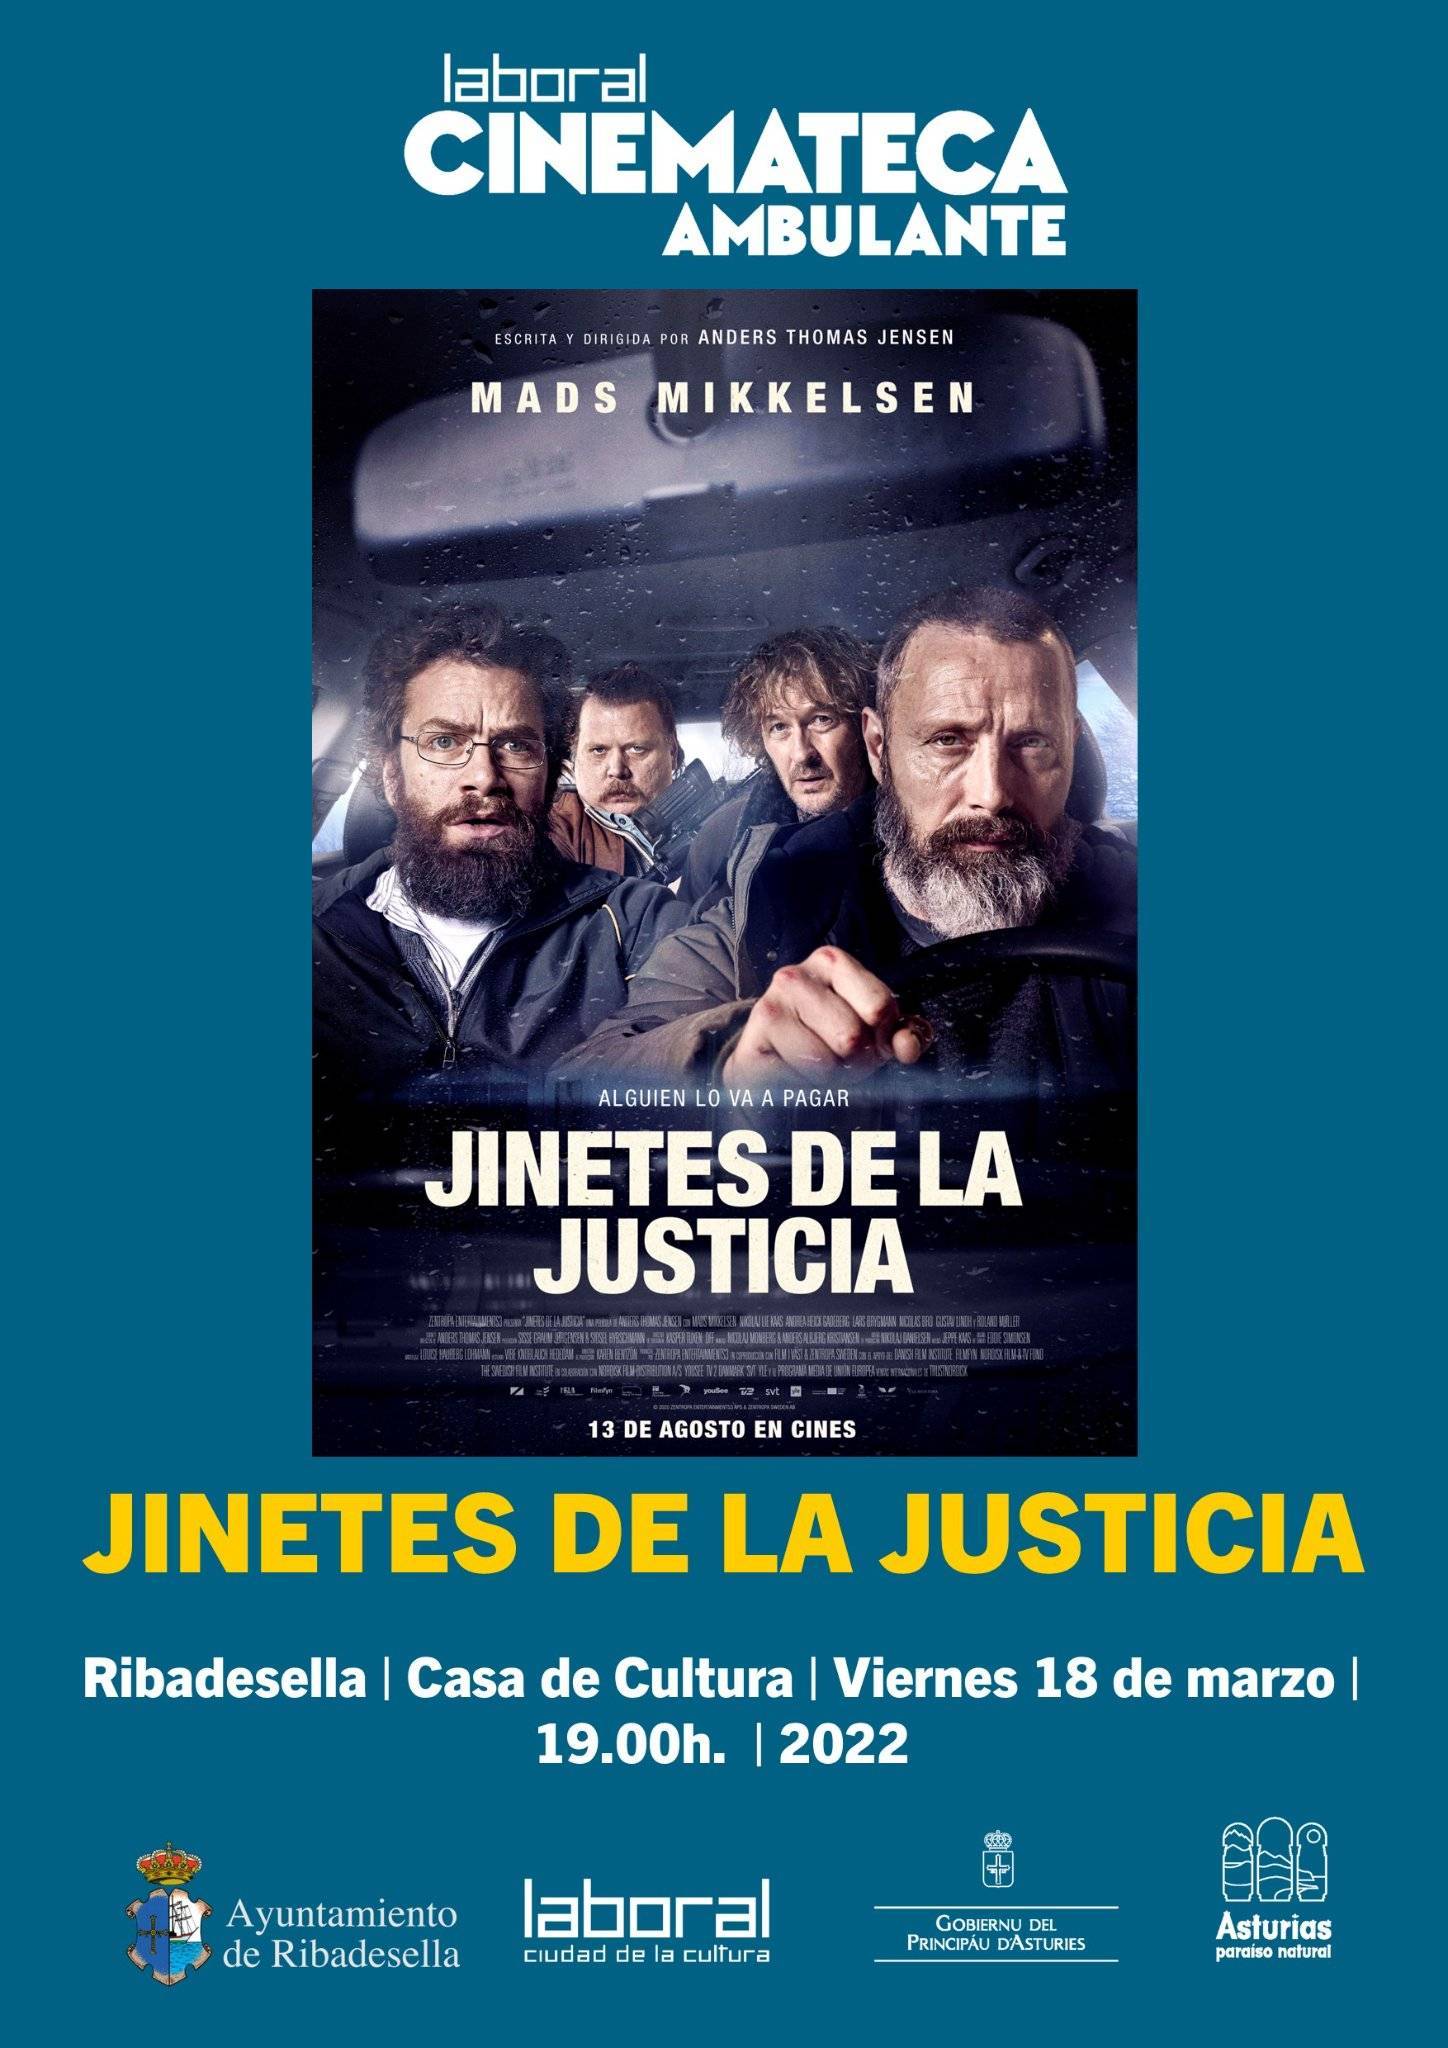 'Jinetes de la justicia' (2022) - Ribadesella (Asturias)